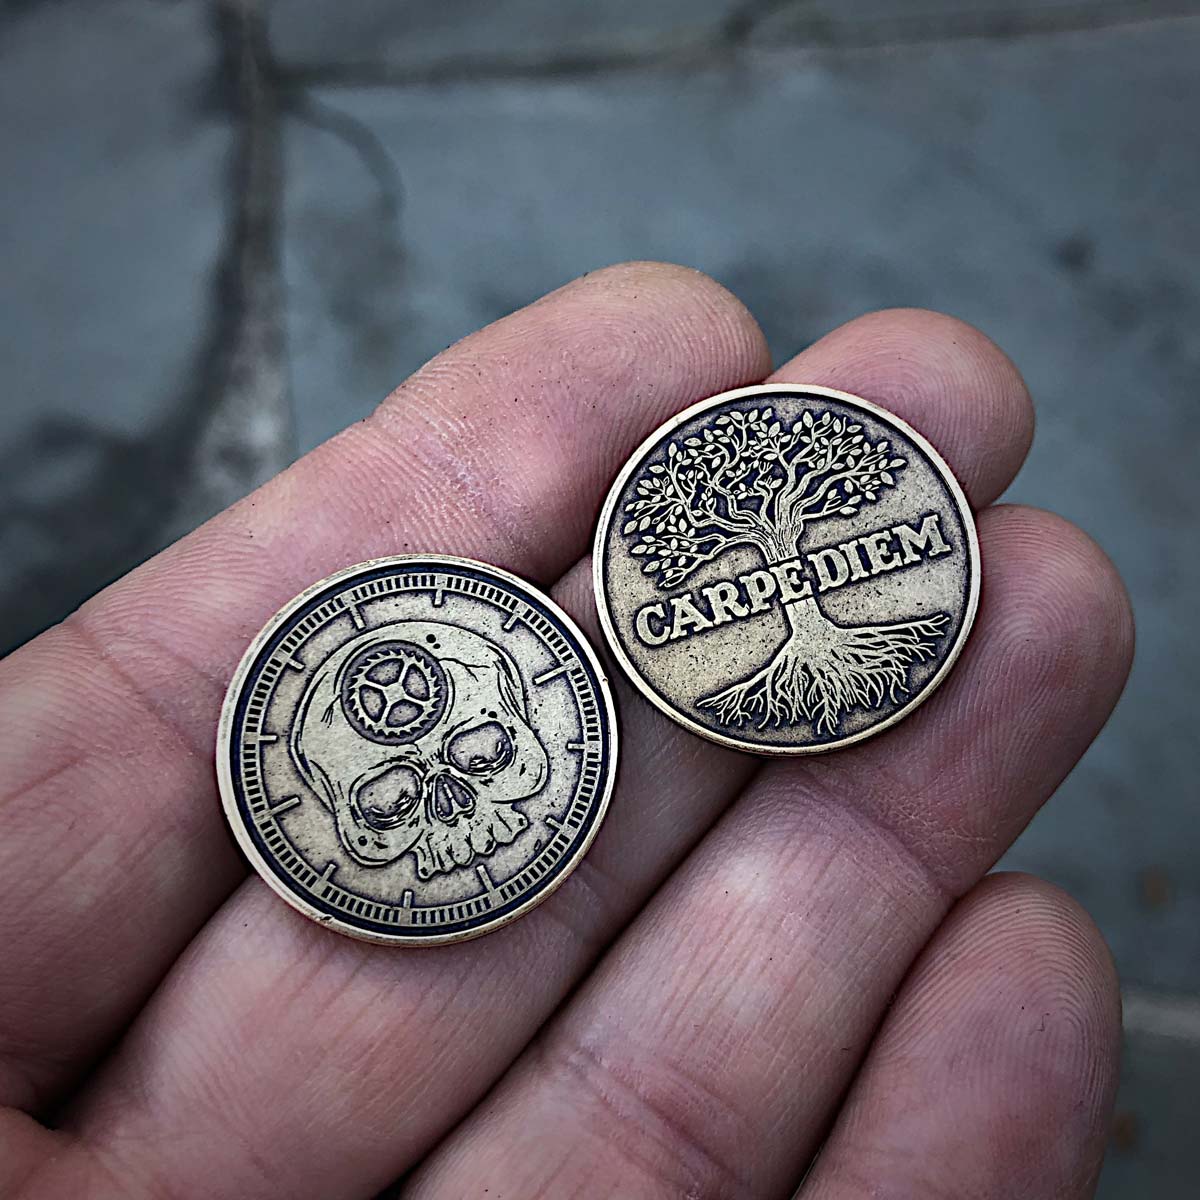 Carpe Diem Mini Coins